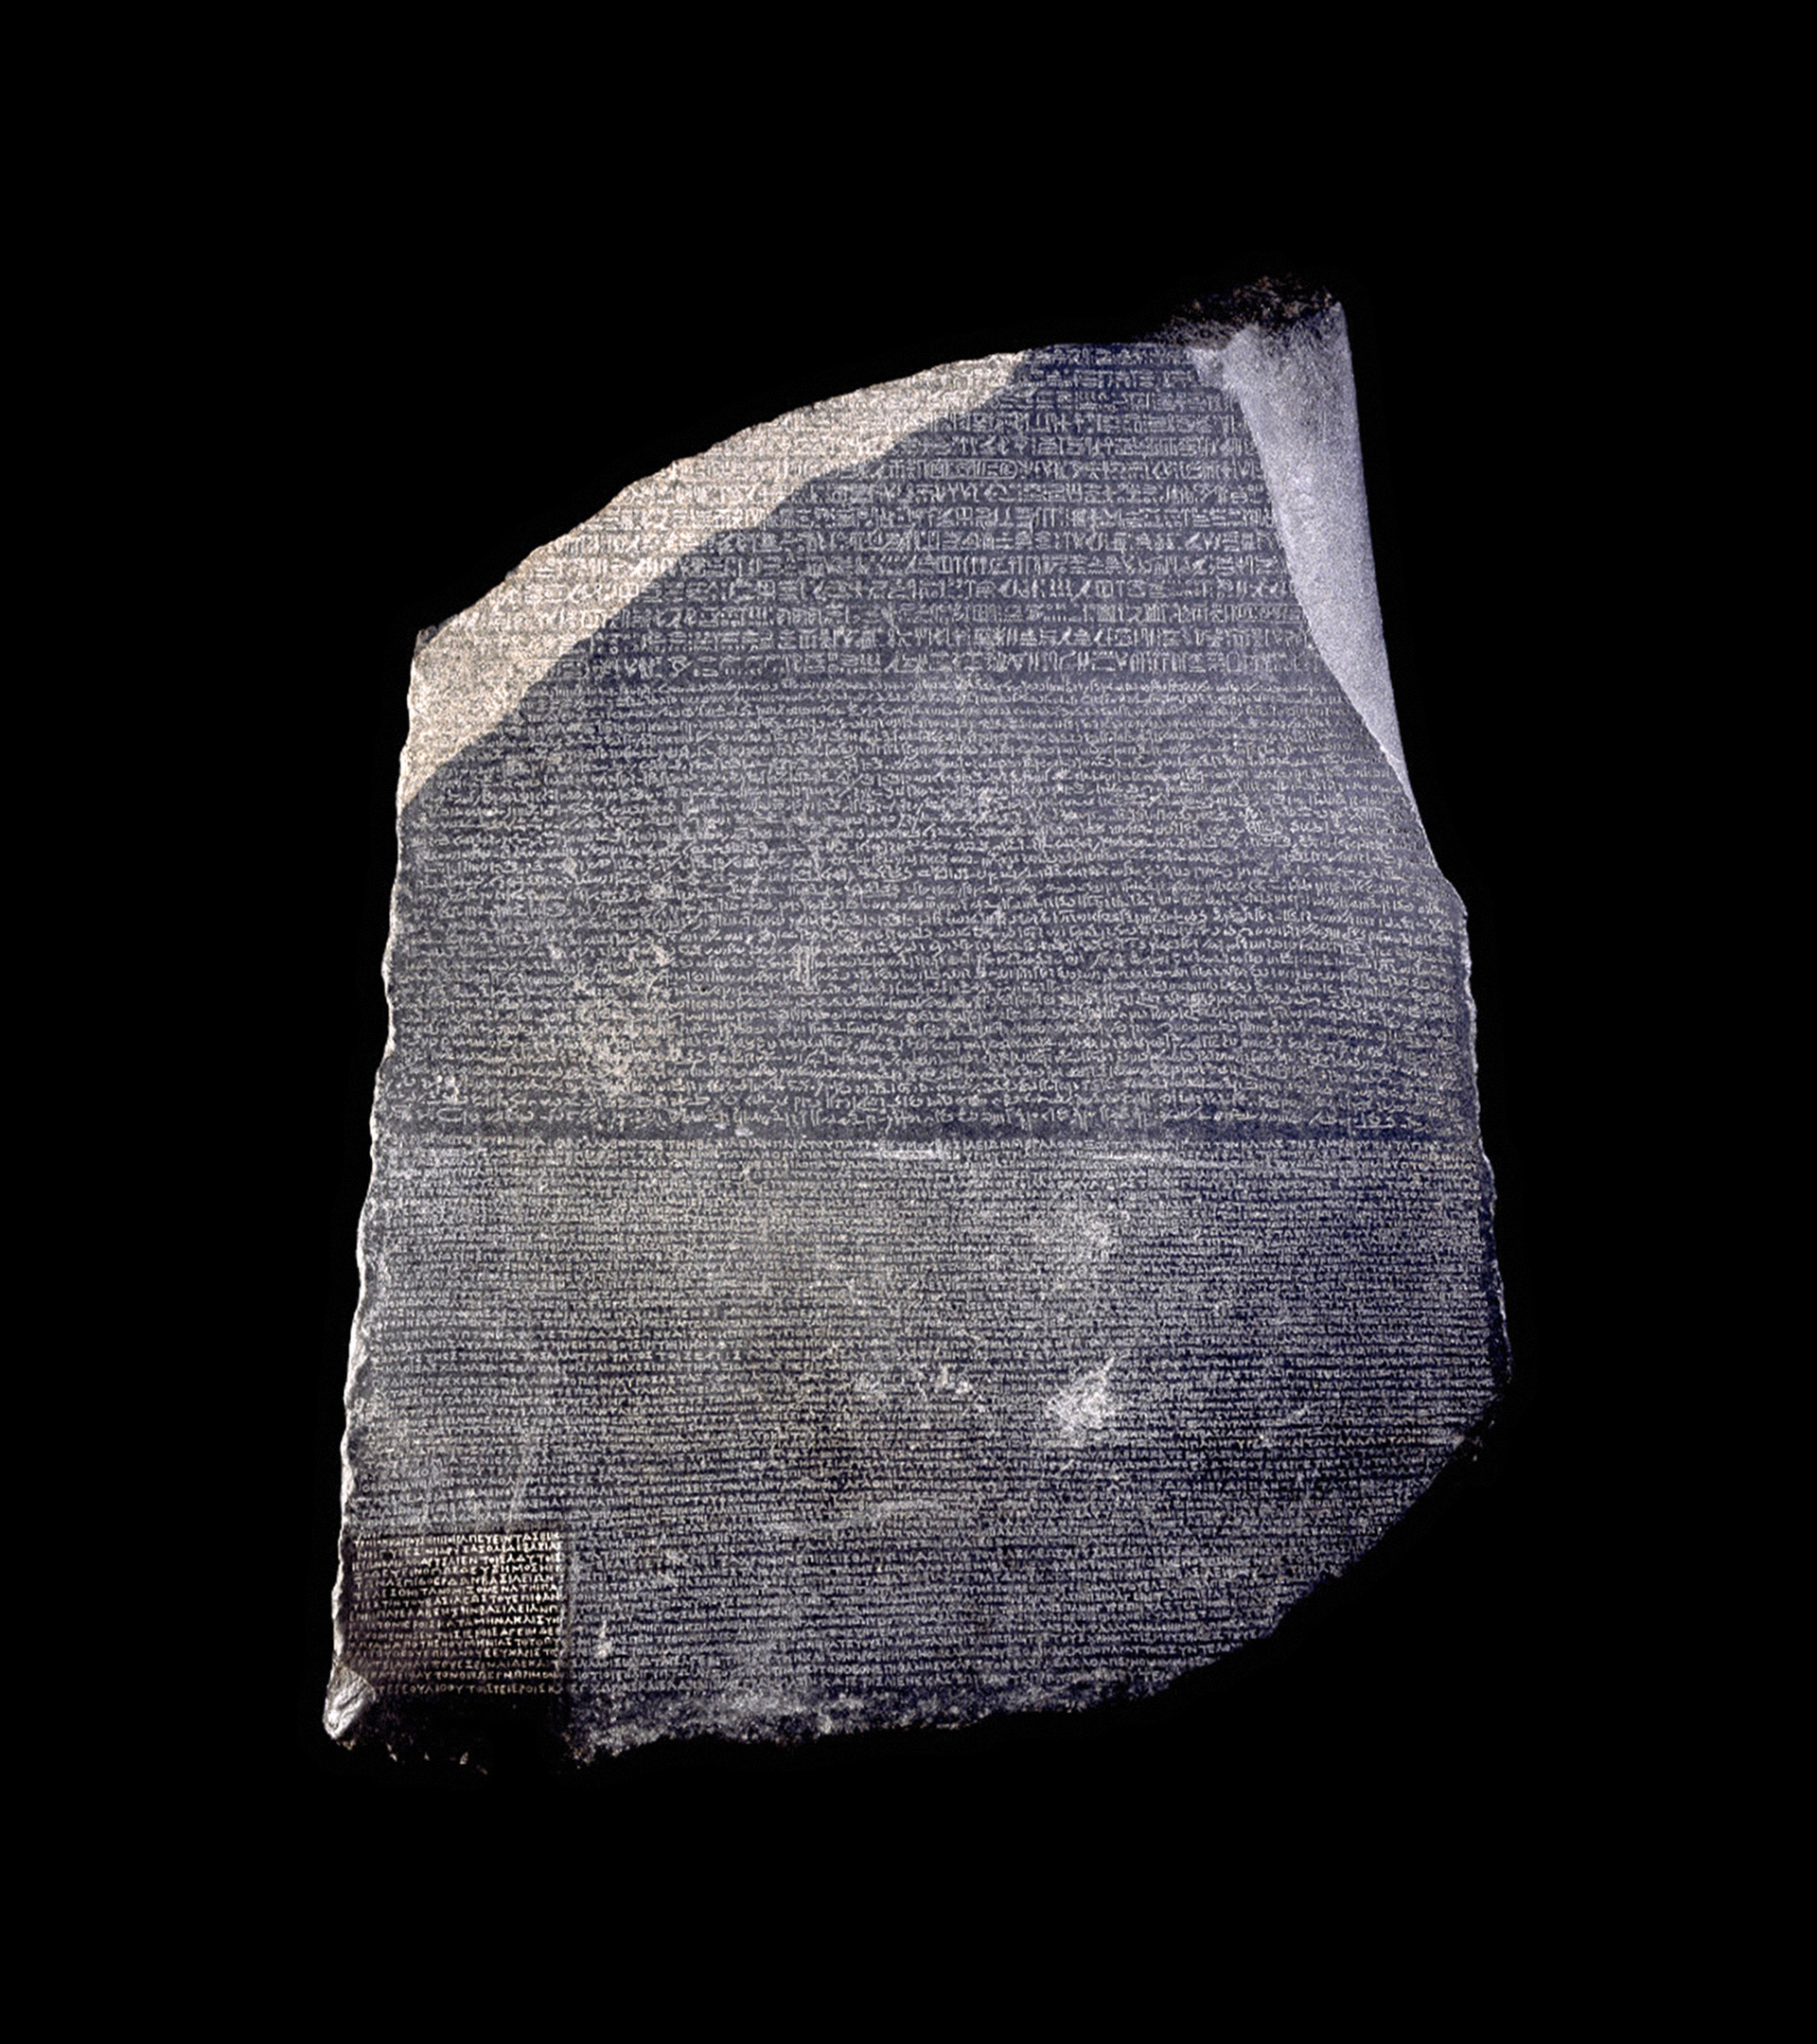 La piedra de Rosetta consta de tres inscripciones escritas en dos lenguas y con tres escrituras diferentes.